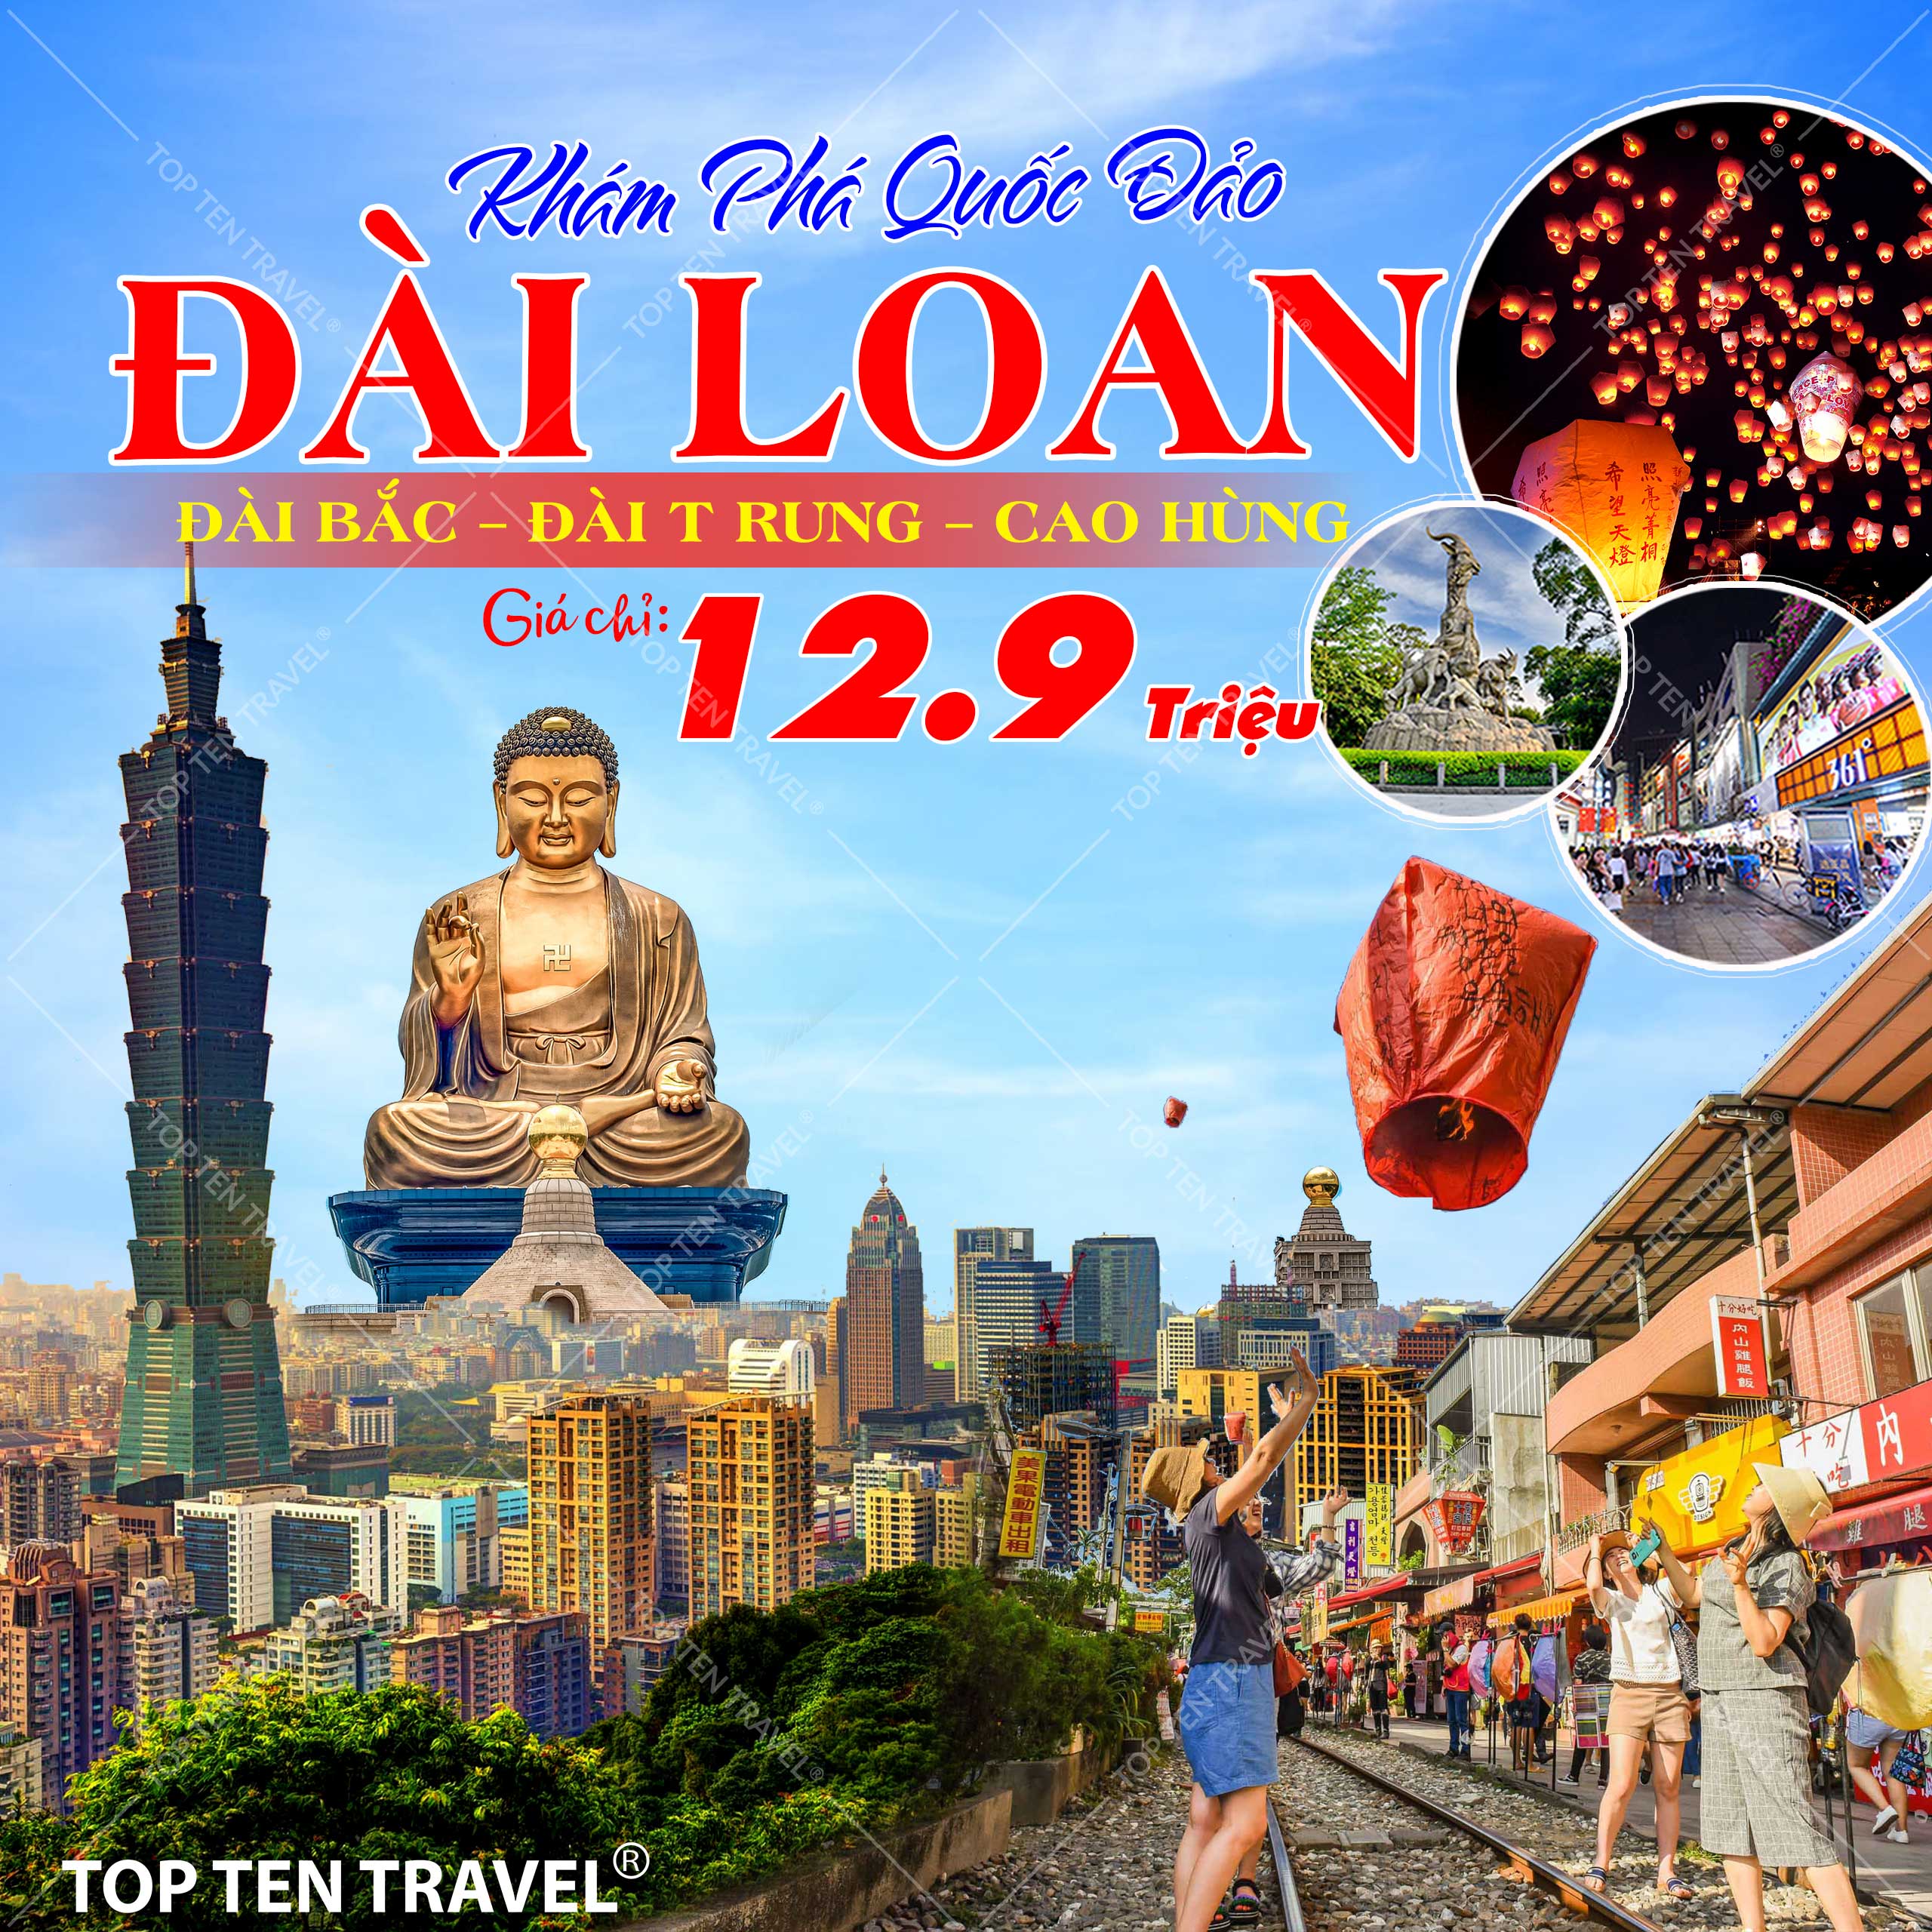 Tour Du lịch Đài Loan